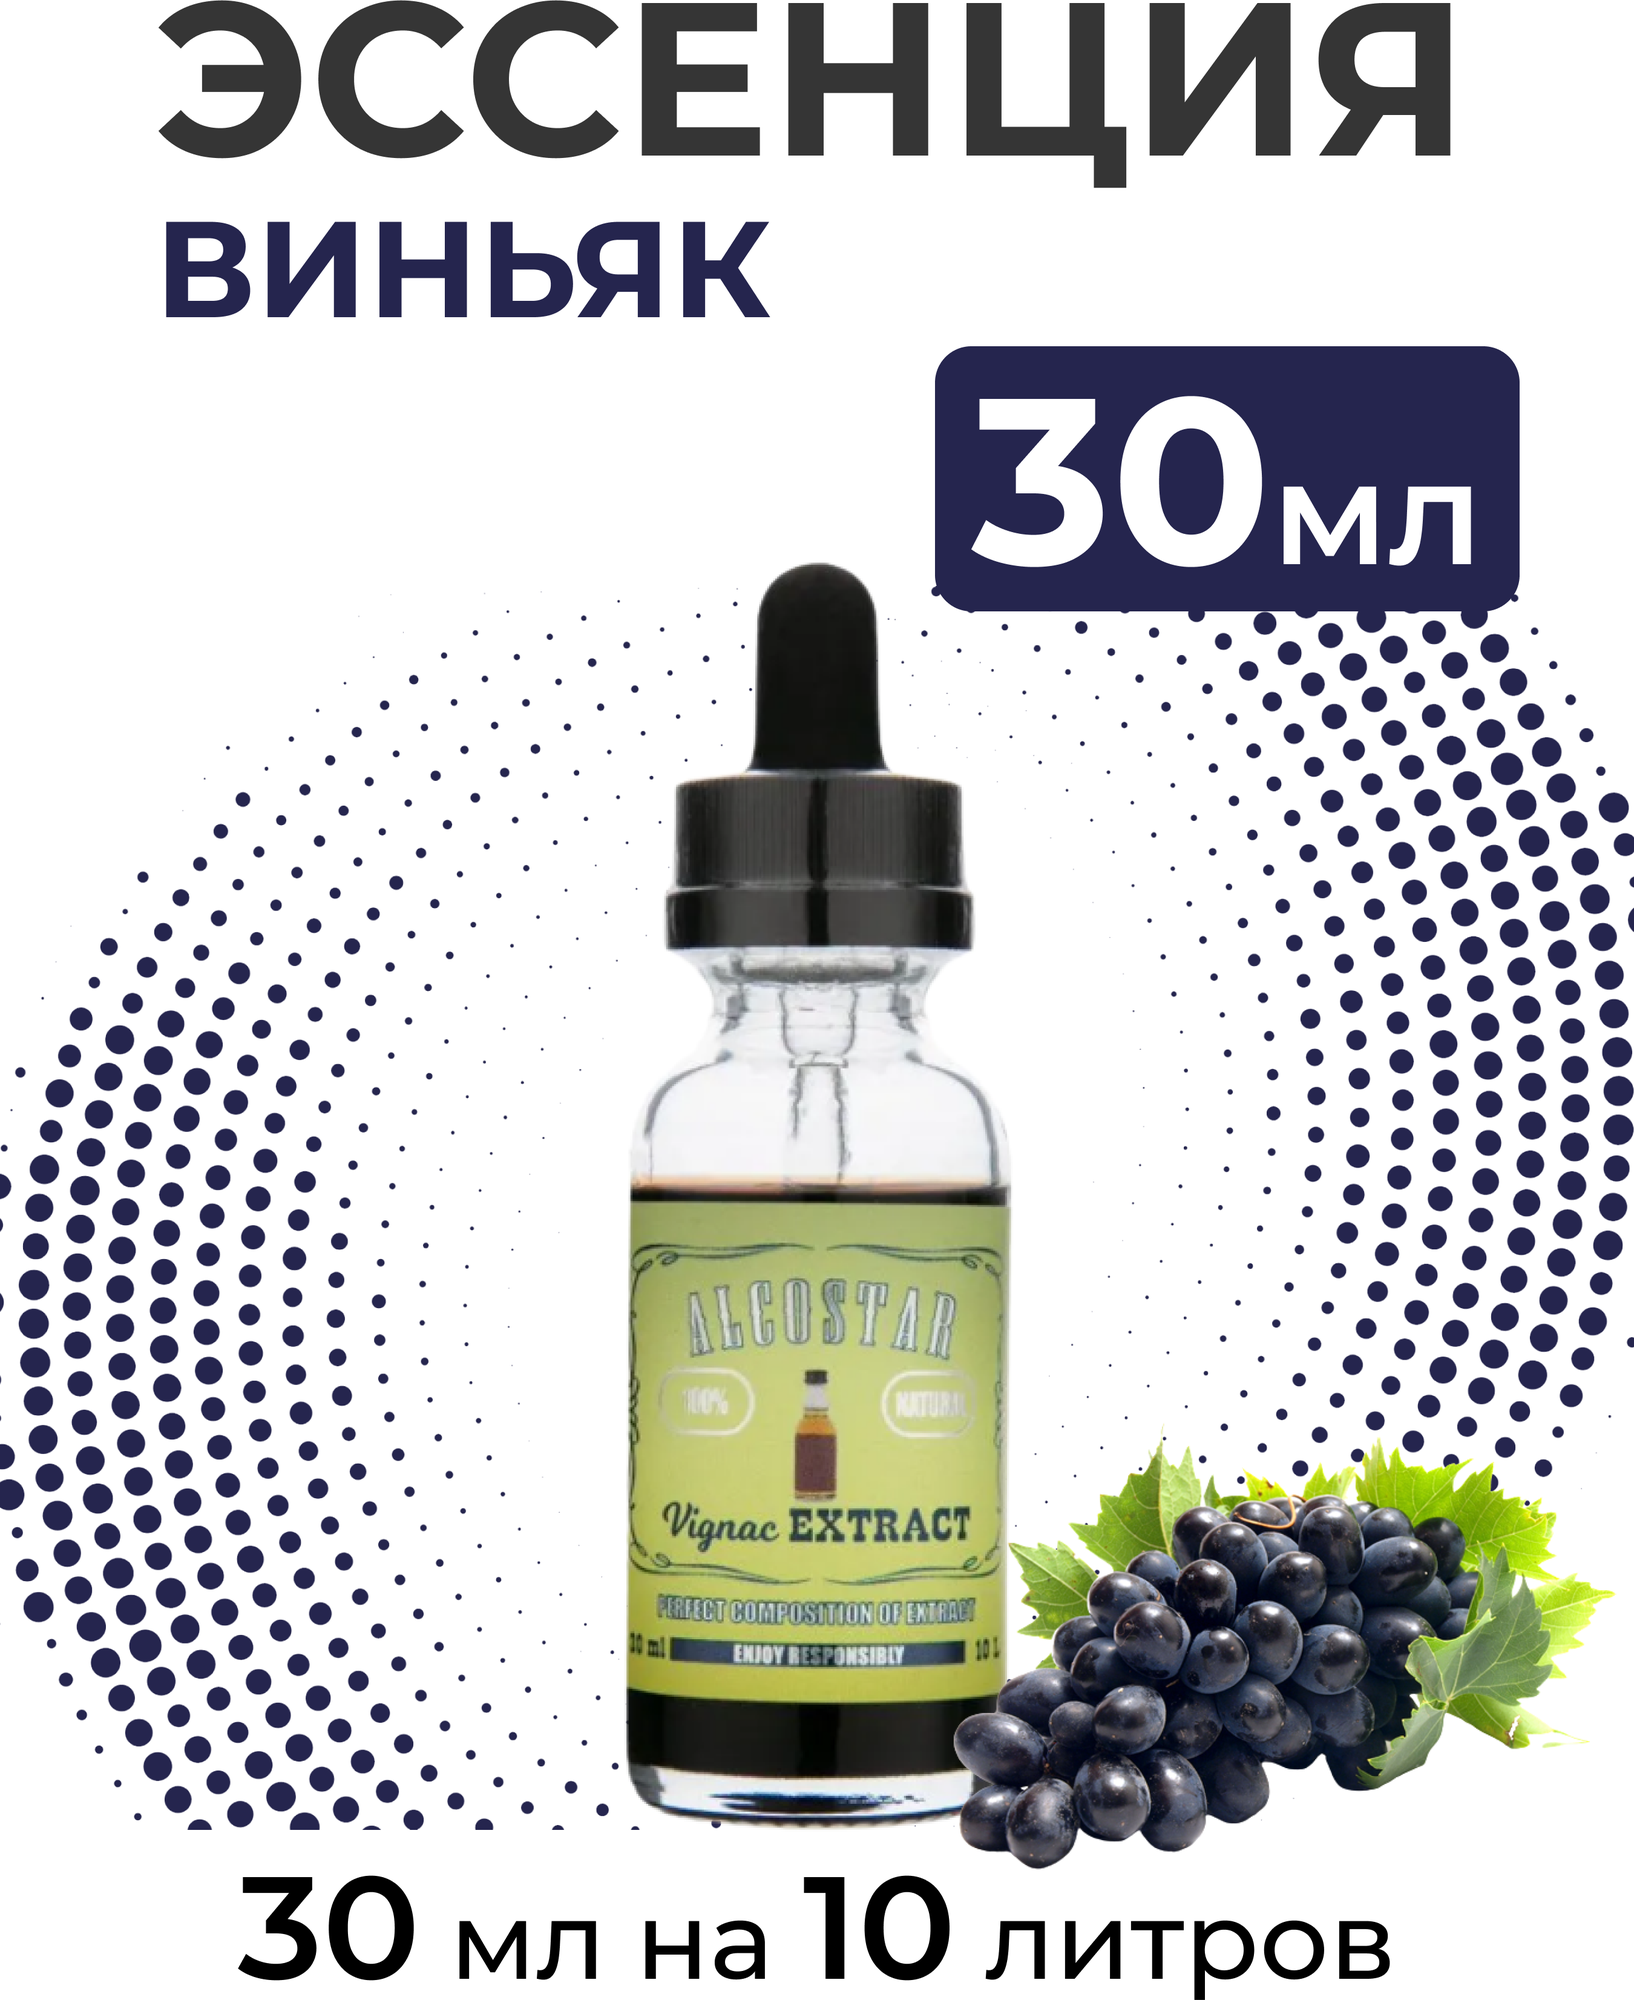 Эссенция Виньяк, Vignac Extract Alcostar, вкусовой концентрат (ароматизатор пищевой) для самогона, 30 мл